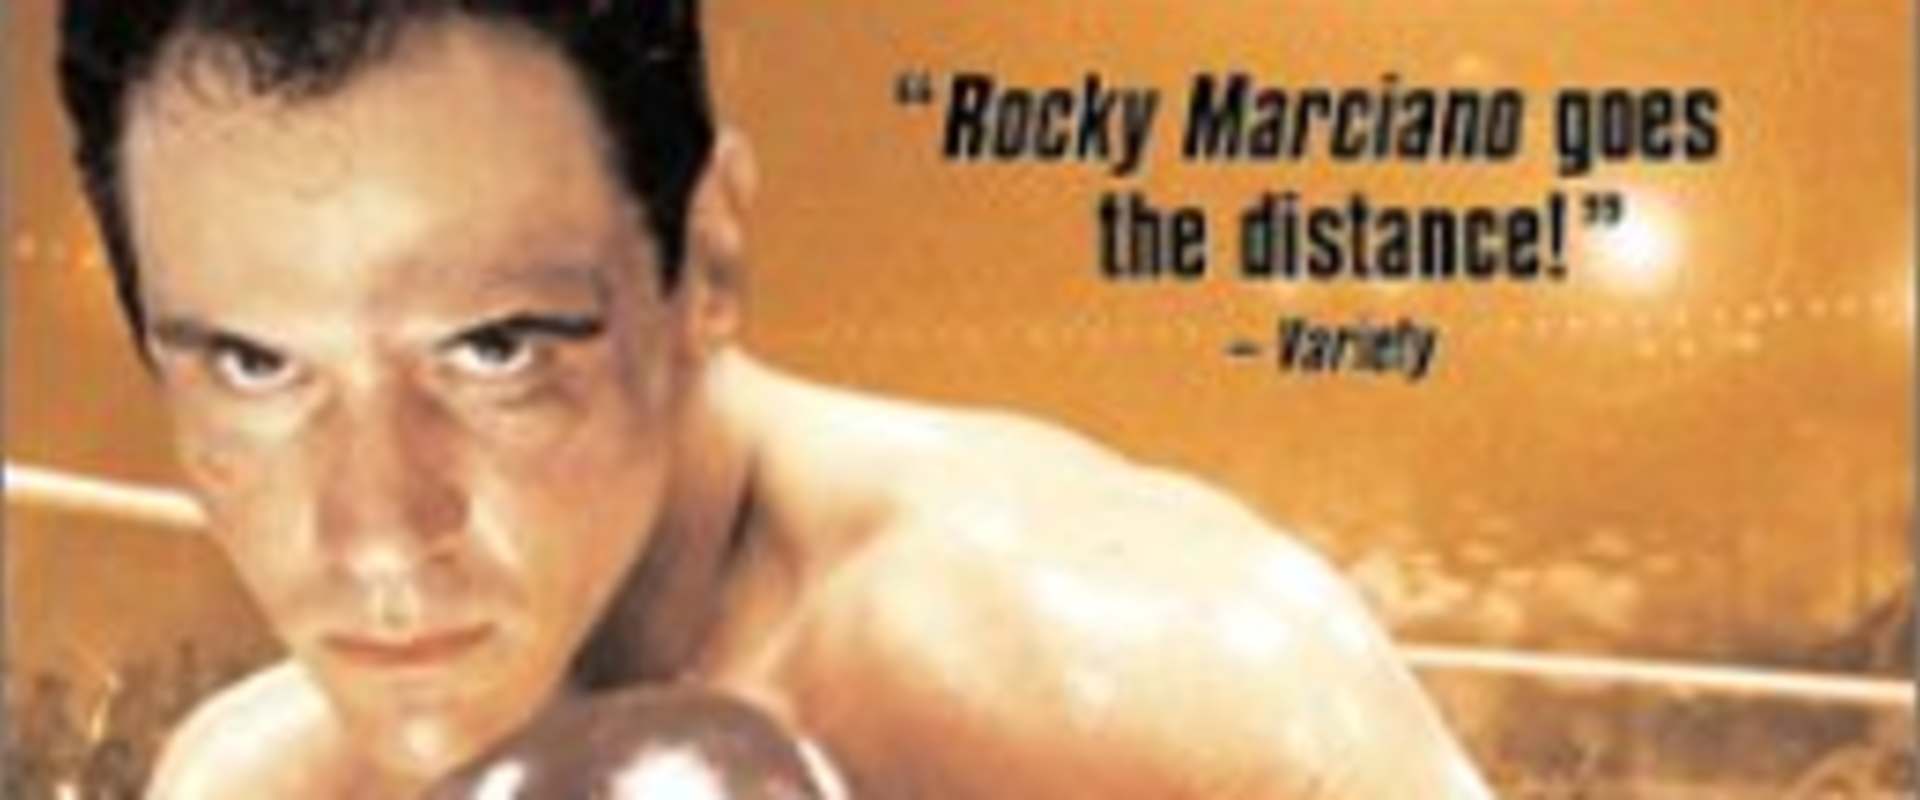 Rocky Marciano background 2